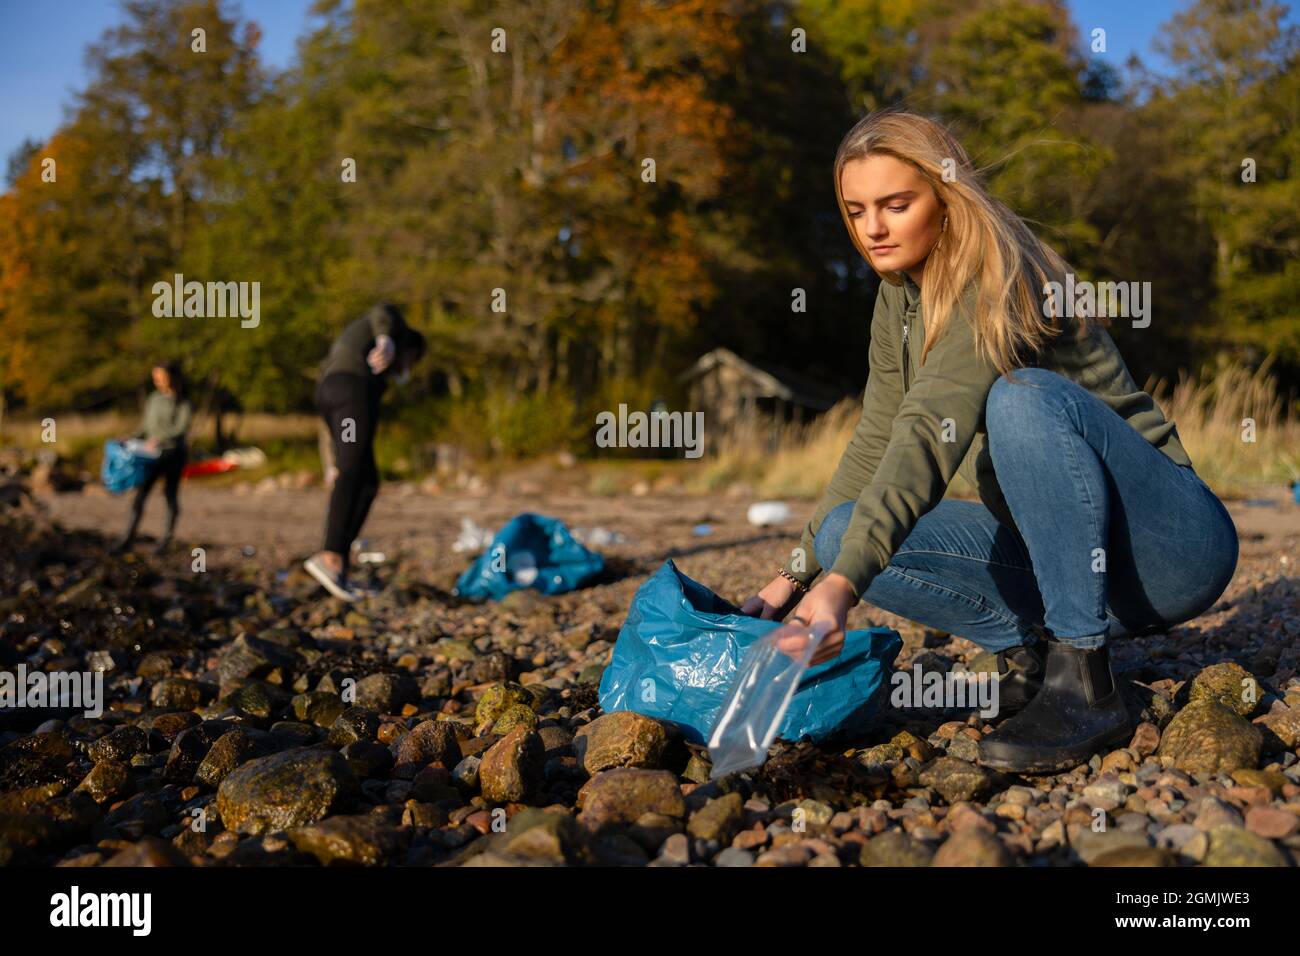 Seriöse junge Frau im Team zum Umweltschutz, die am Strand Plastik abholt Stockfoto